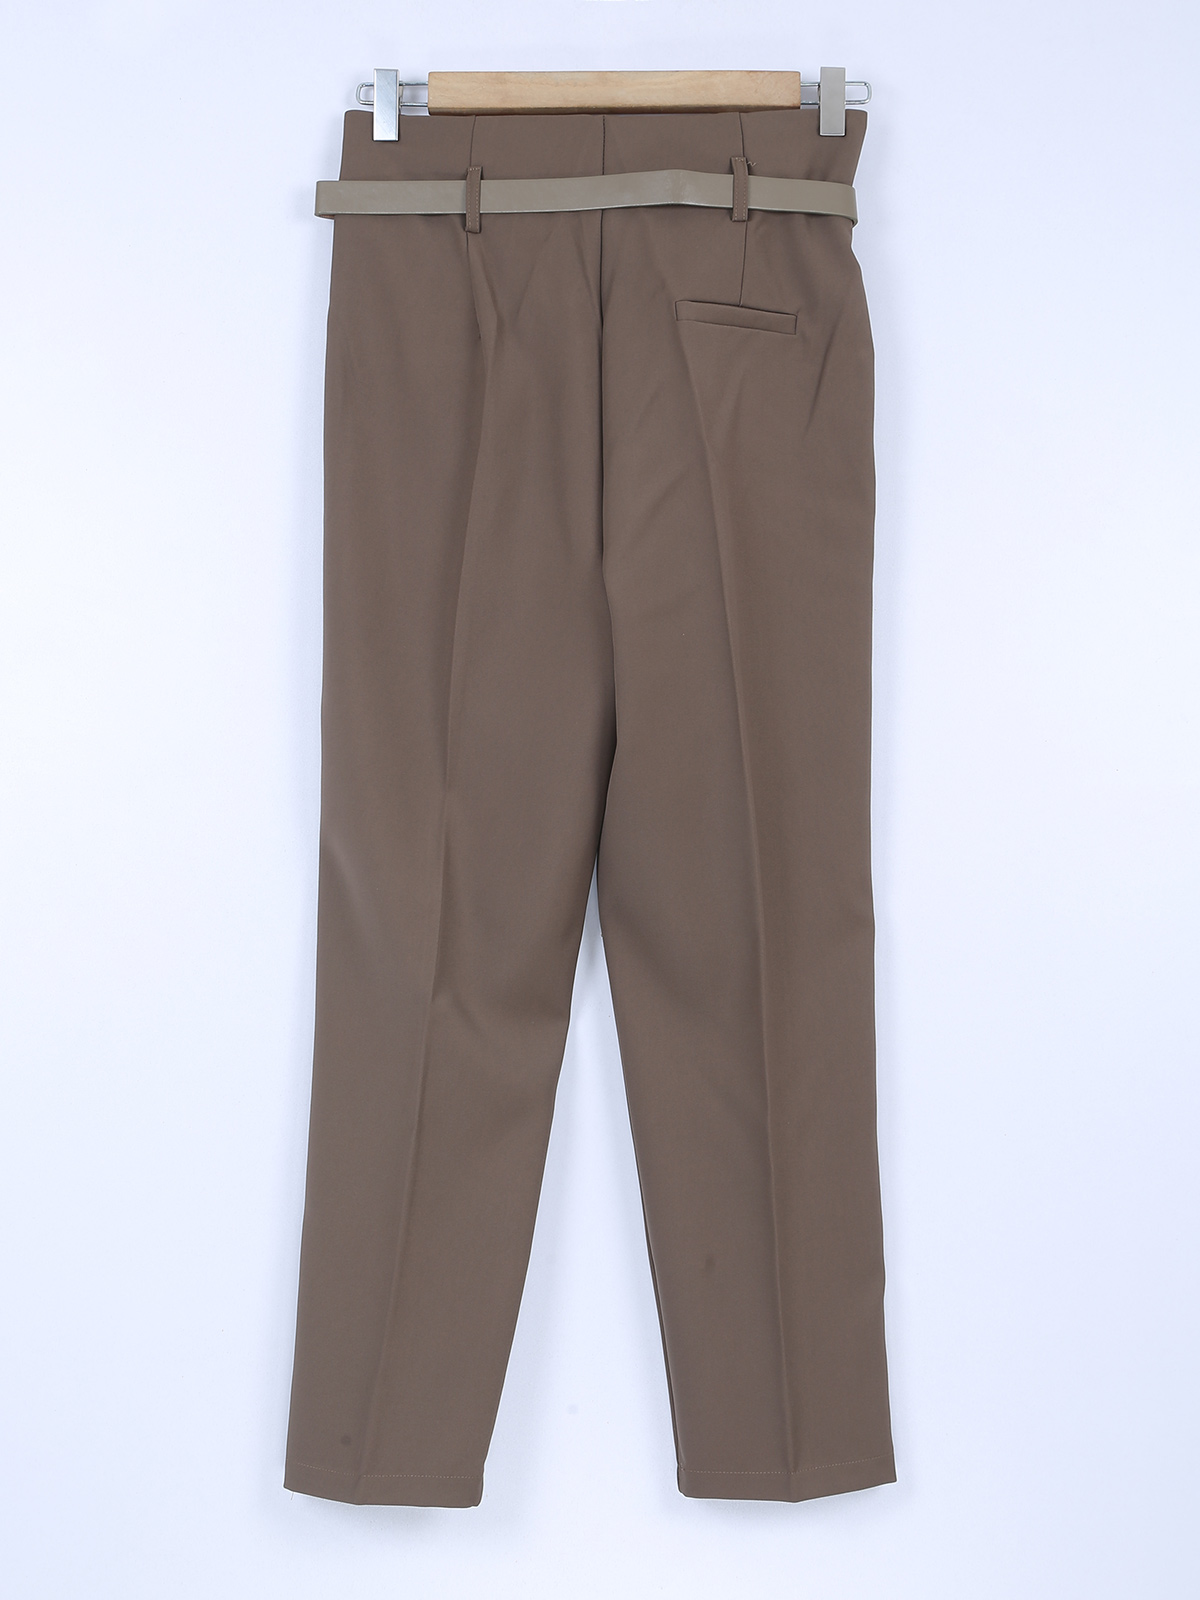 Buy WeReKo Men's Solid Lycra Slim Fit Wrinkle Resistant Casual Wear  Comfortable Formal Trousers Pants (Medium, Dark Grey) at Amazon.in